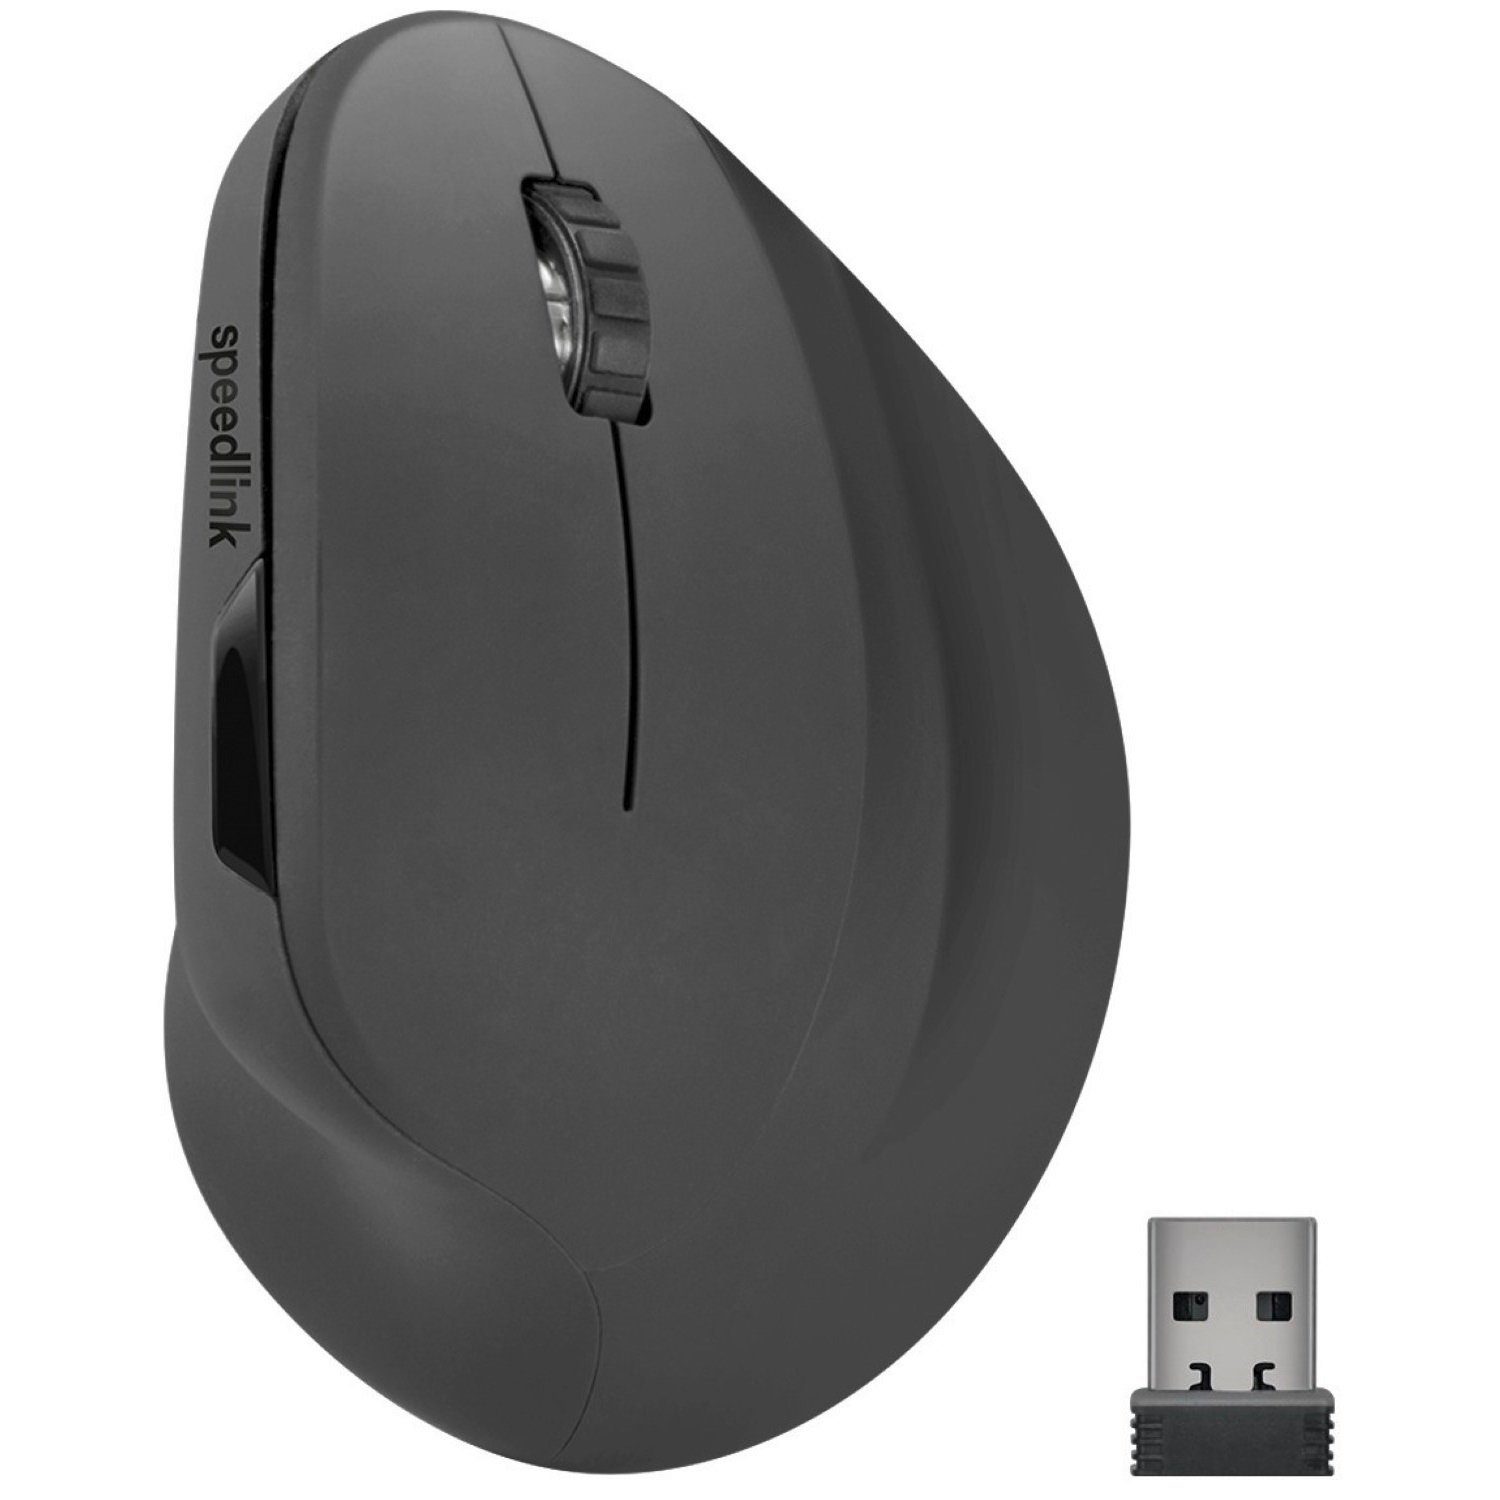 Speedlink PIAVO 5 von Vertikal Ergonomisch Mäuse Tasten) Vertical Wireless (Vertikal Vorbeugung Mouse Handschäden Maus